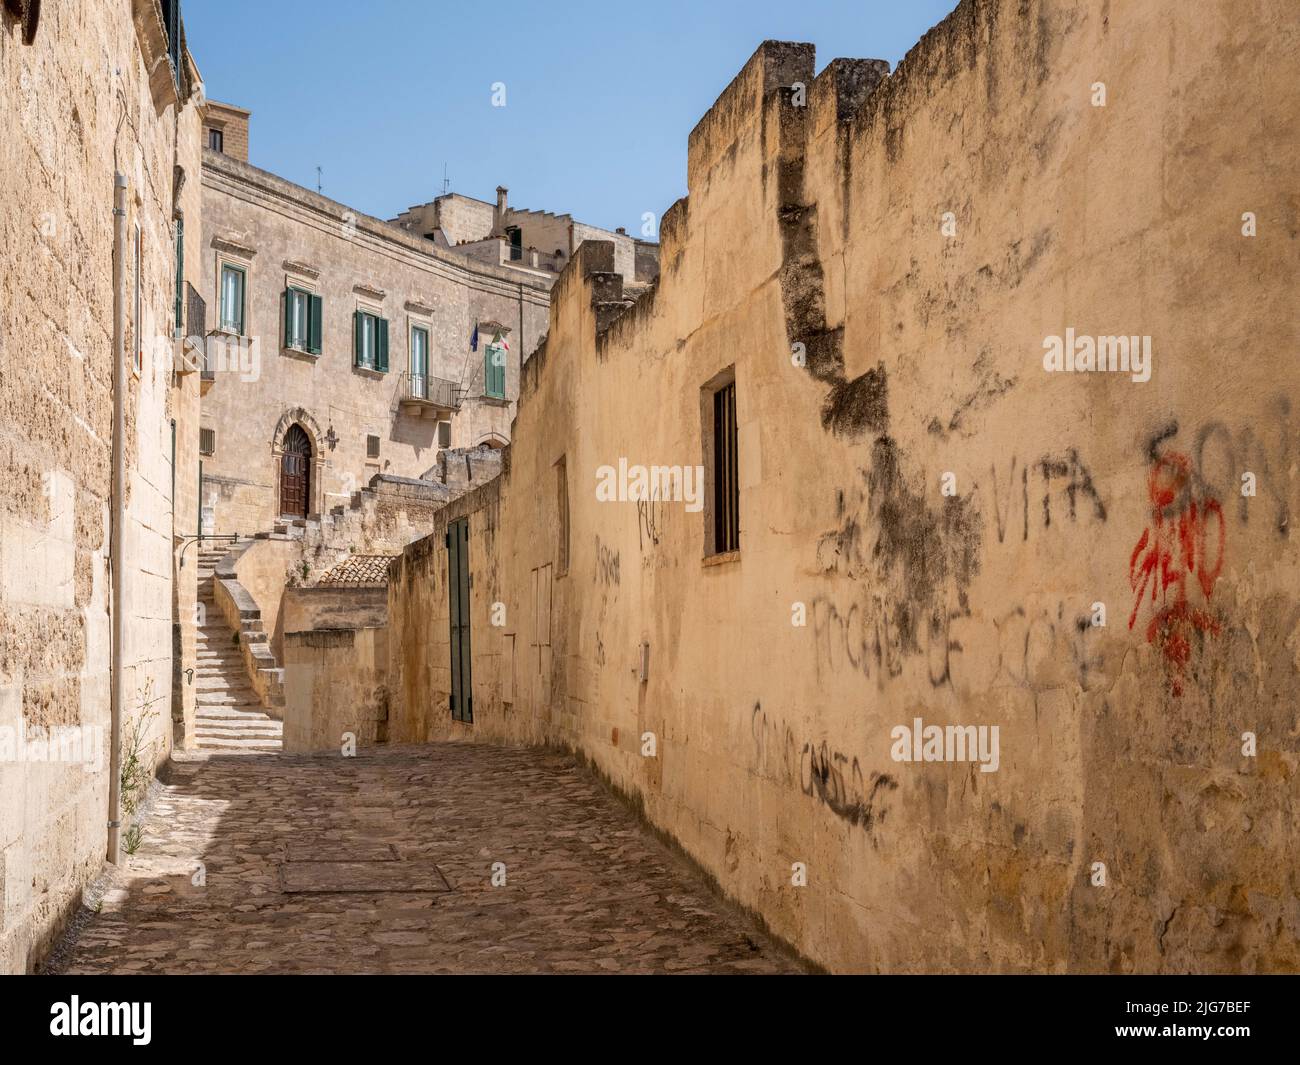 Scène de rue dans le quartier de Sassi à Matera, en Italie, avec des maisons en pierre calcaire et des habitations troglodytiques dans tout l'hôtel et datant de l'époque paléolithique Banque D'Images